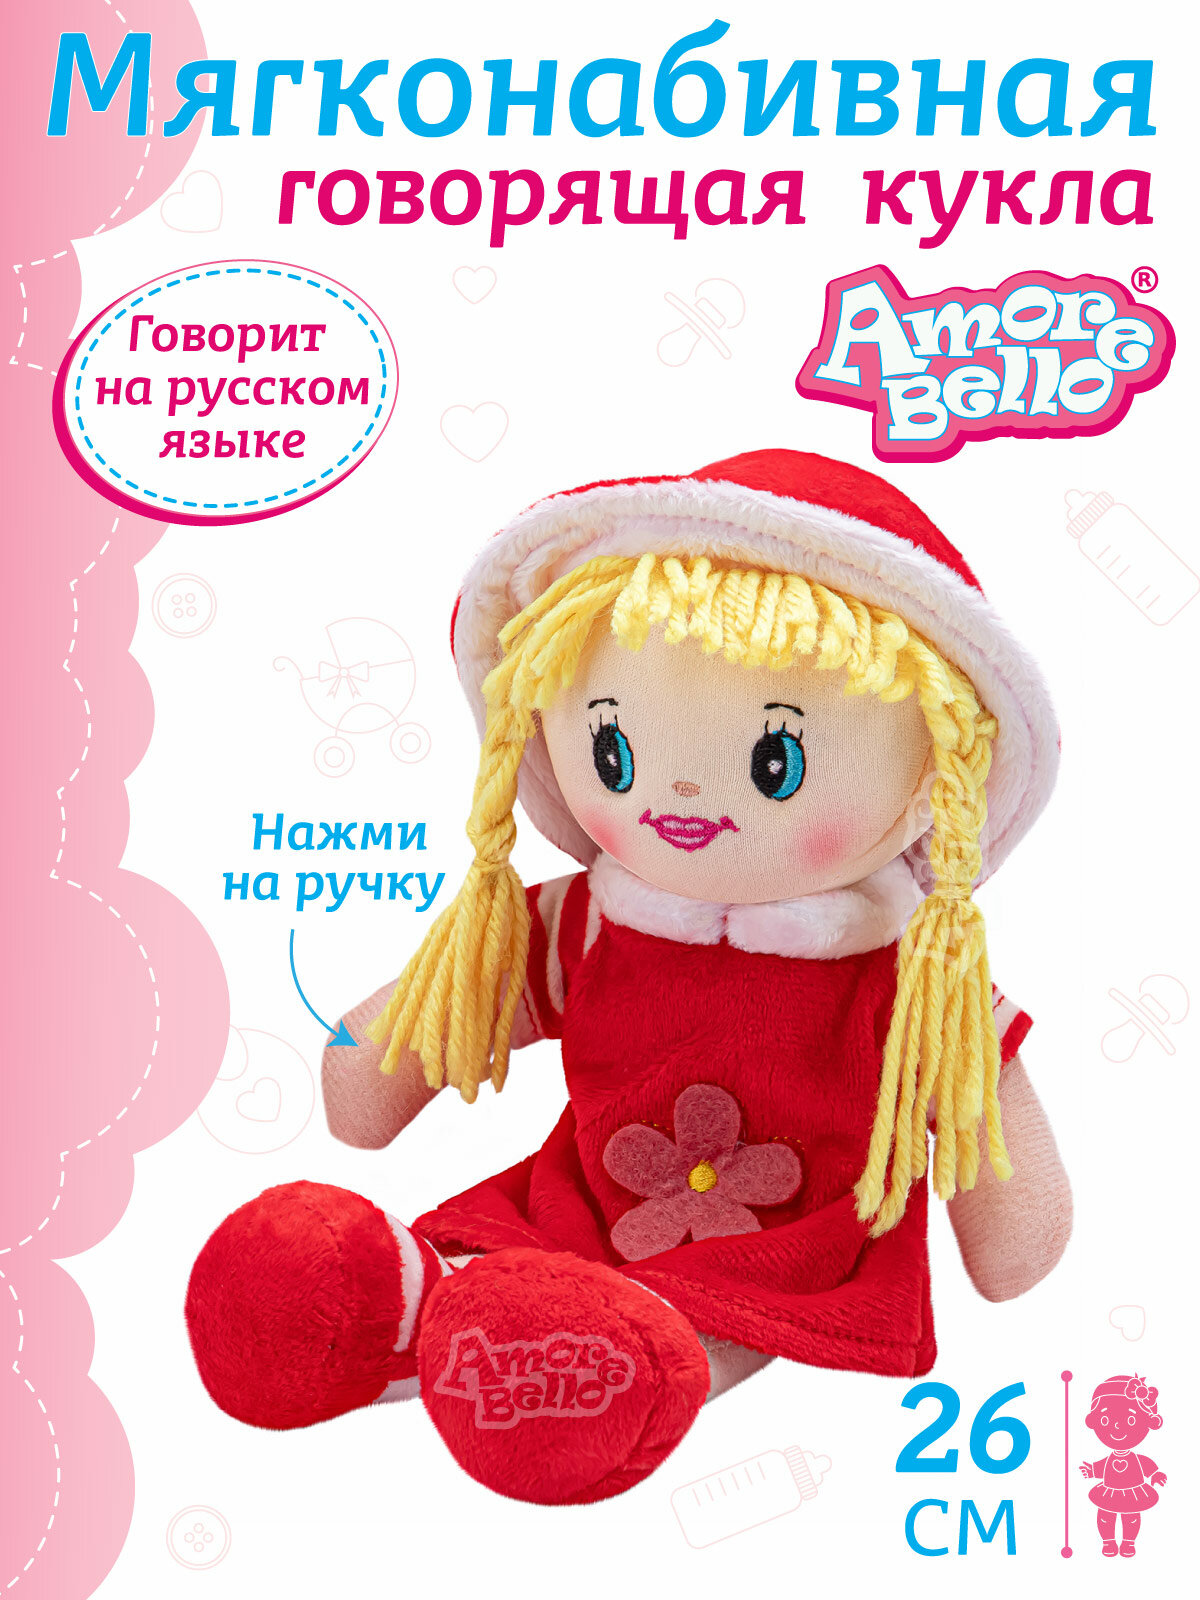 Кукла детская мягконабивная говорящая ТМ Amore Bello, 26 см, на батарейках, фразы на русском языке/стихотворение/песенка, JB0572061